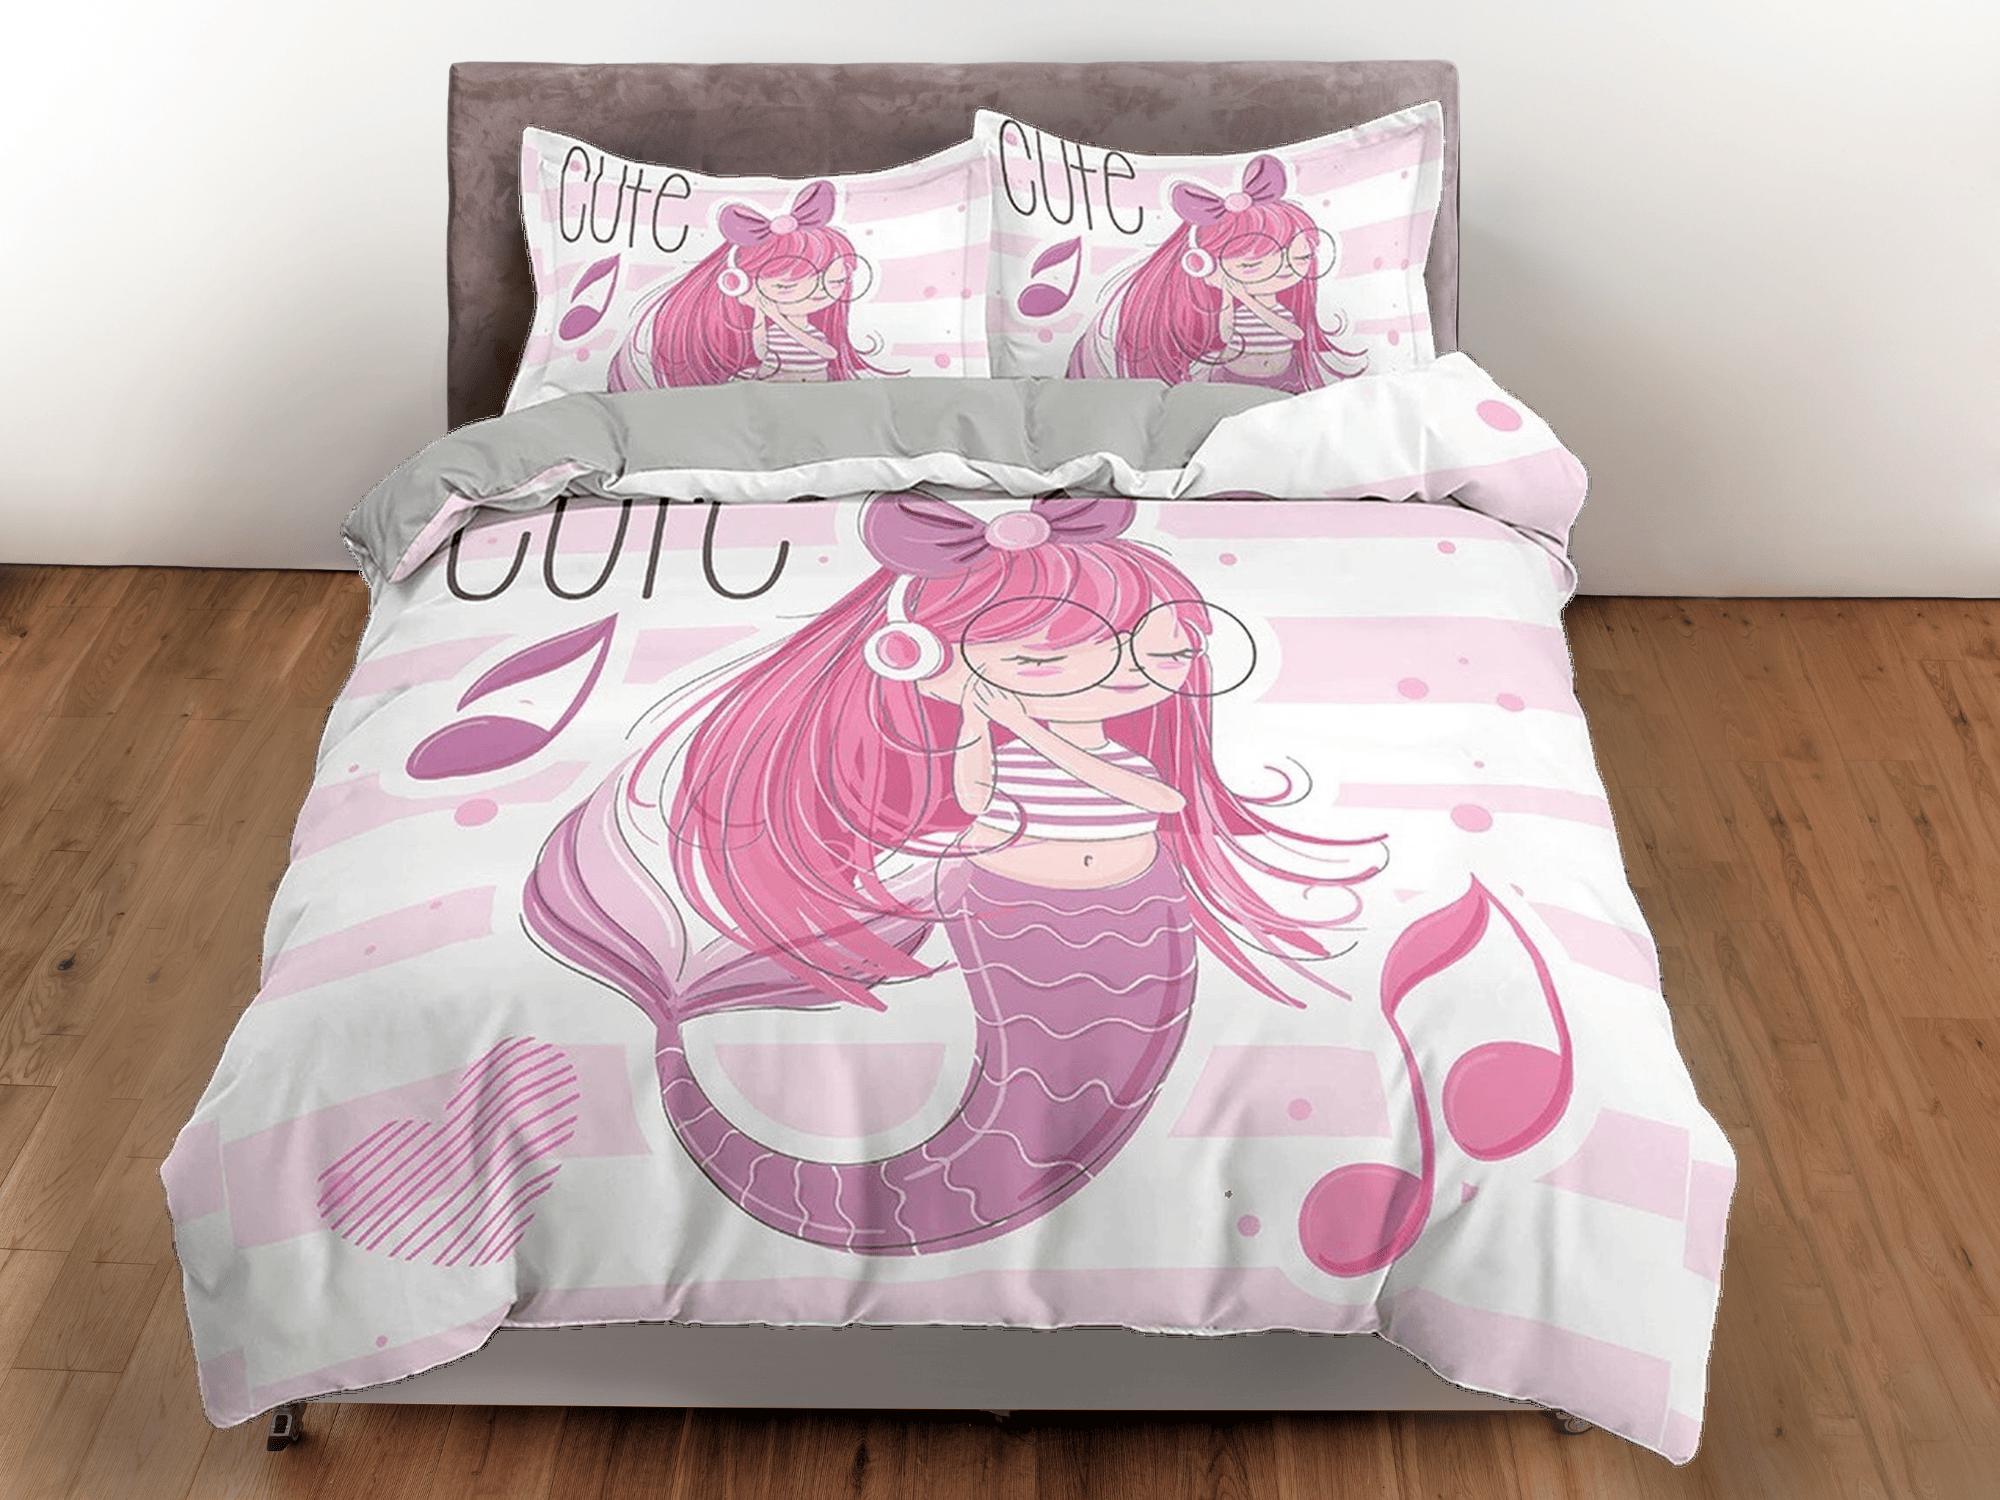 daintyduvet Cute Mermaid Kids Duvet Cover Set, Girly Pink Bedding Set, Toddler Bedding, Kids Bedroom, Music Lover Bed, Duvet King Queen Full Twin Single